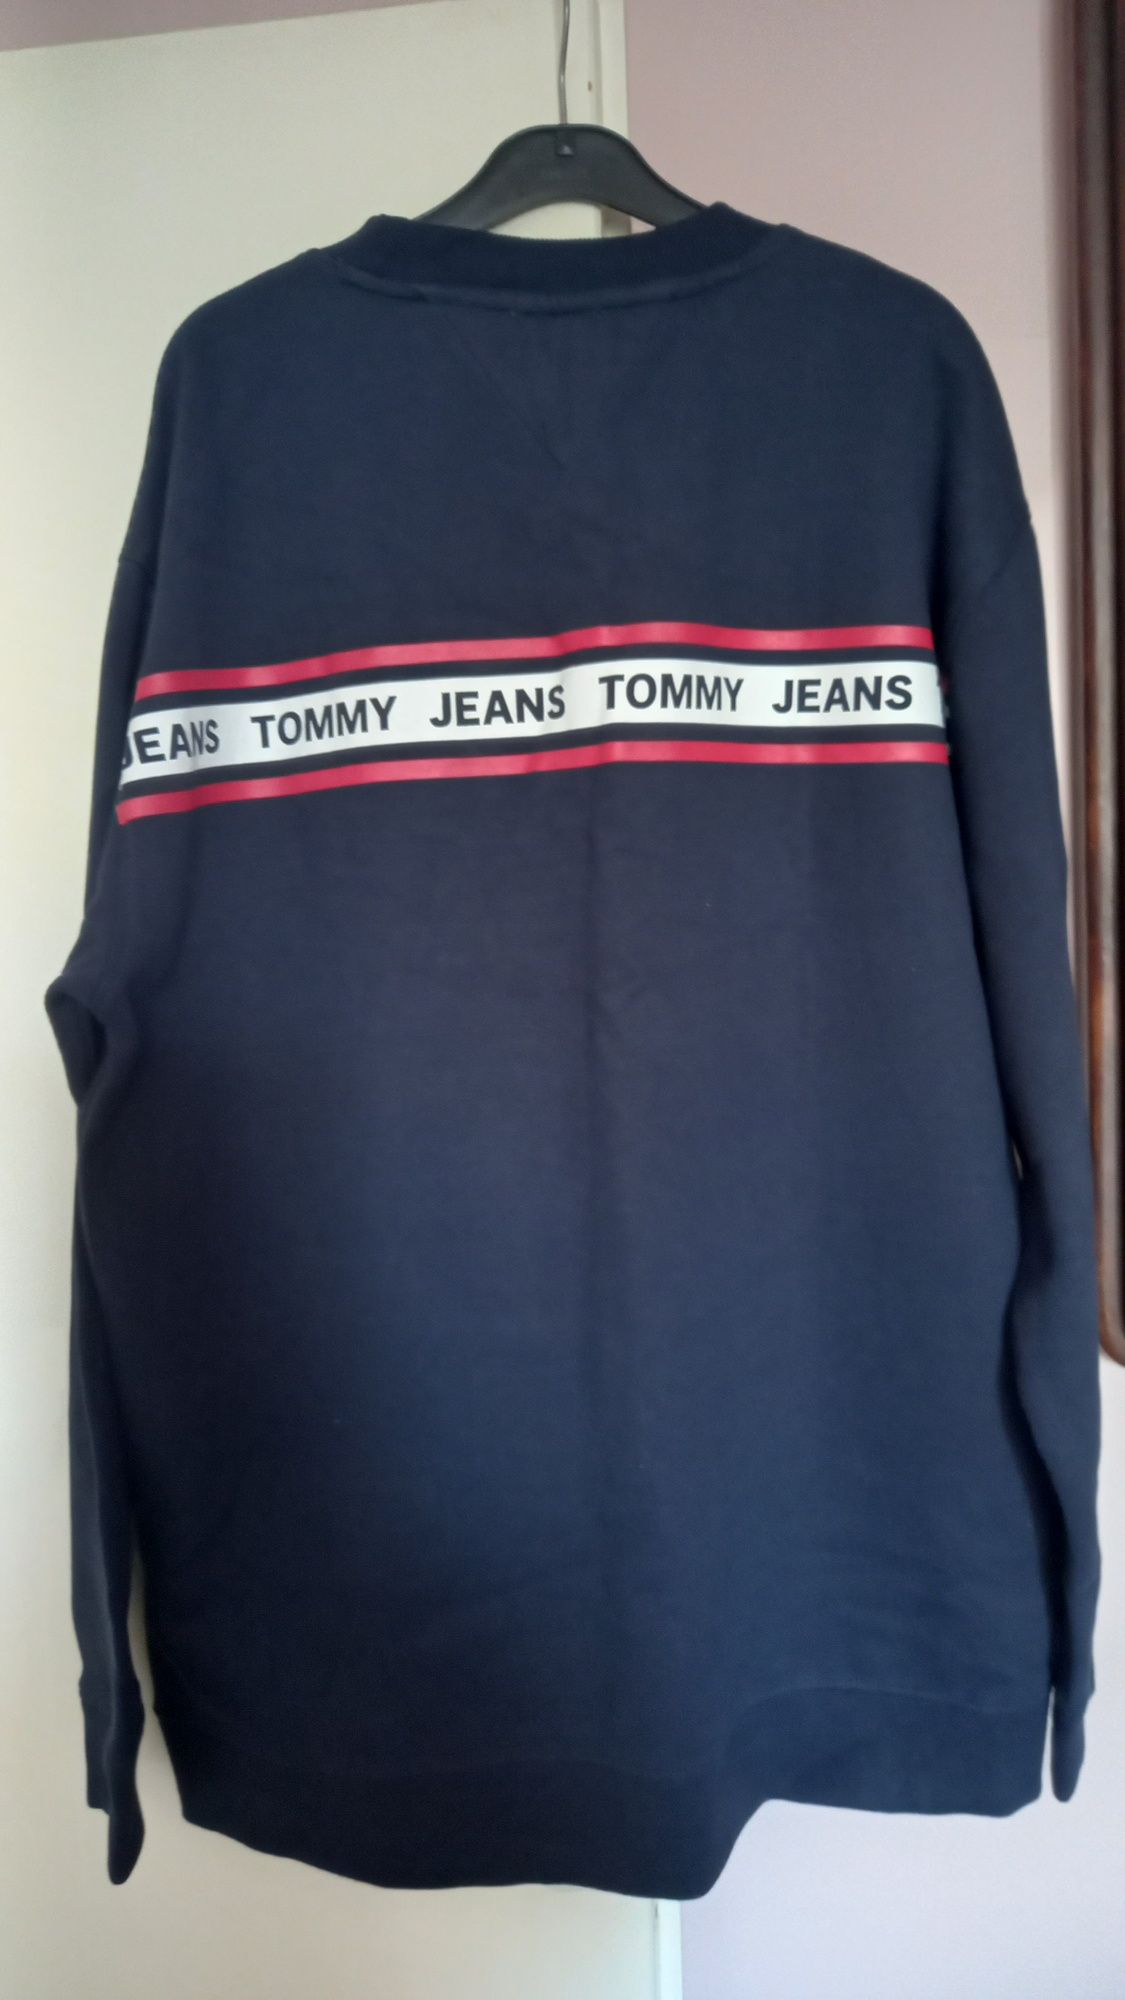 TOMMY JEANS XXL bluza oryginał jak nowa